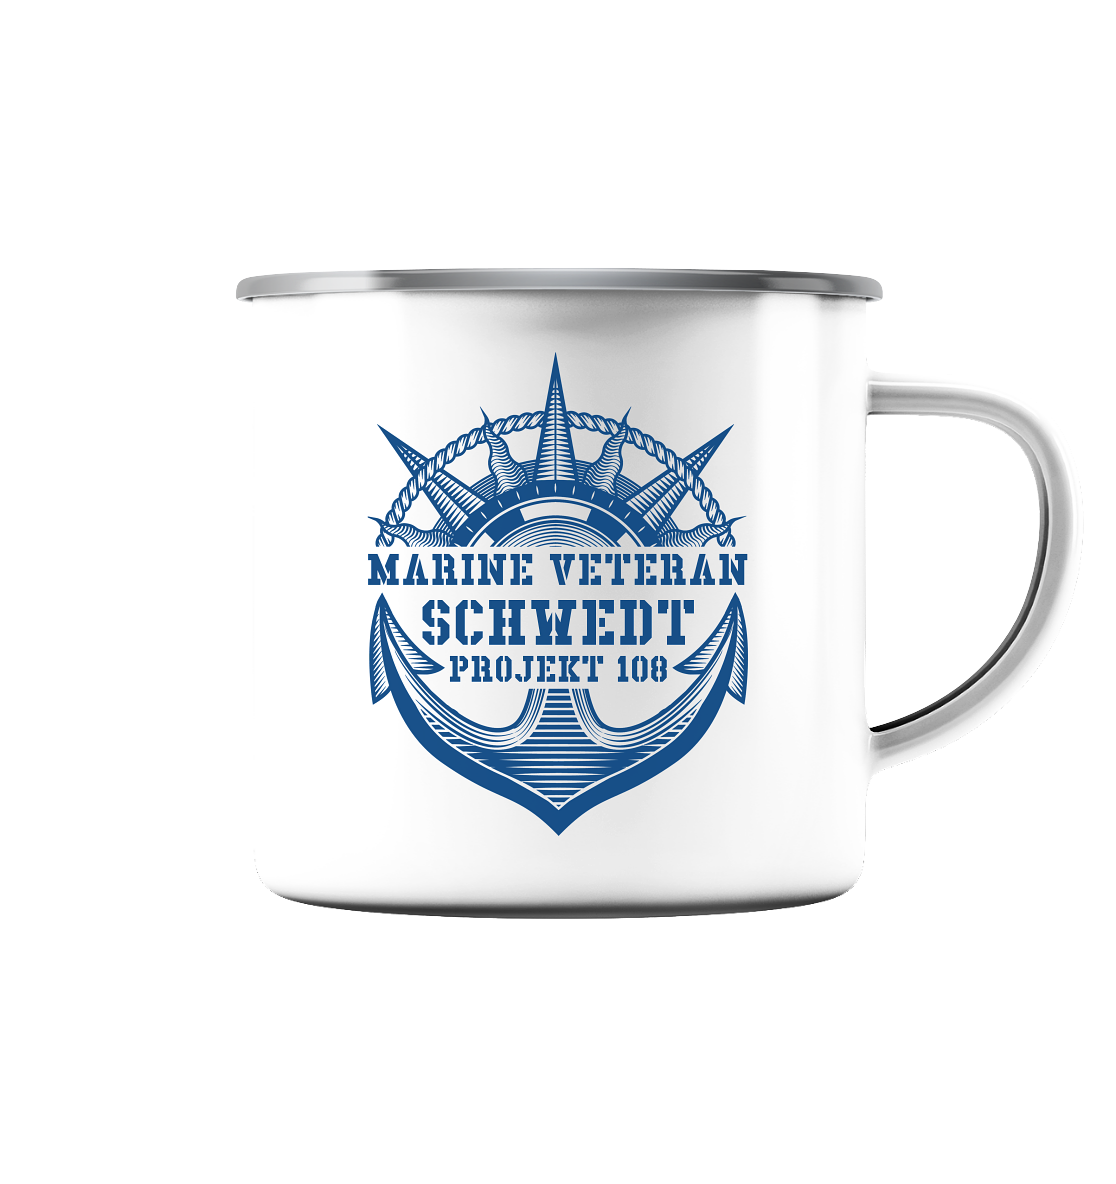 Projekt 108 SCHWEDT Marine Veteran  - Emaille Tasse (Silber)